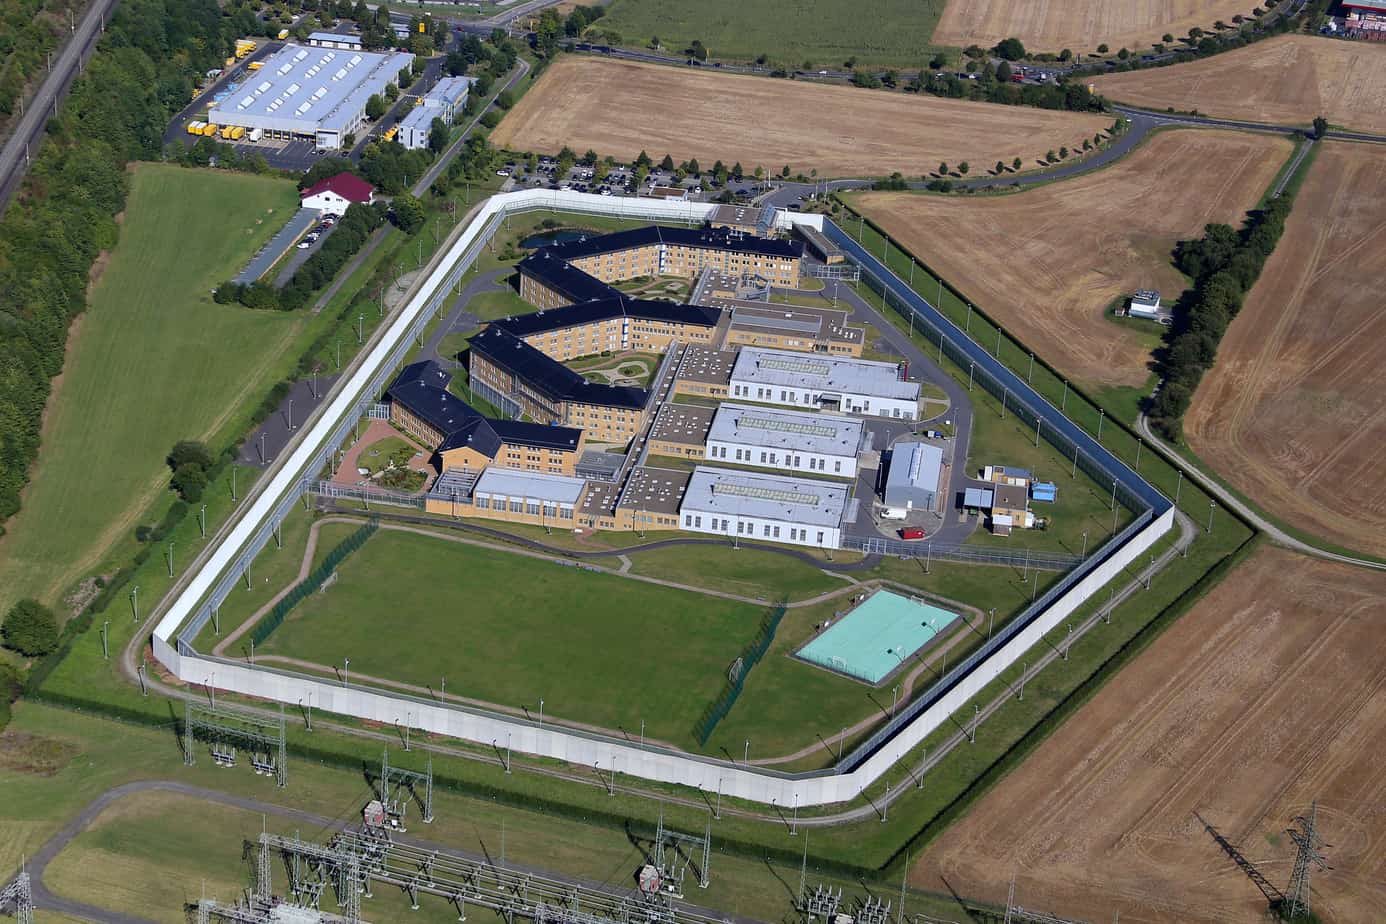 Luftbild einer deutschen Justizvollzugsanstalt, Luftbild eines deutschen Gefängnisses